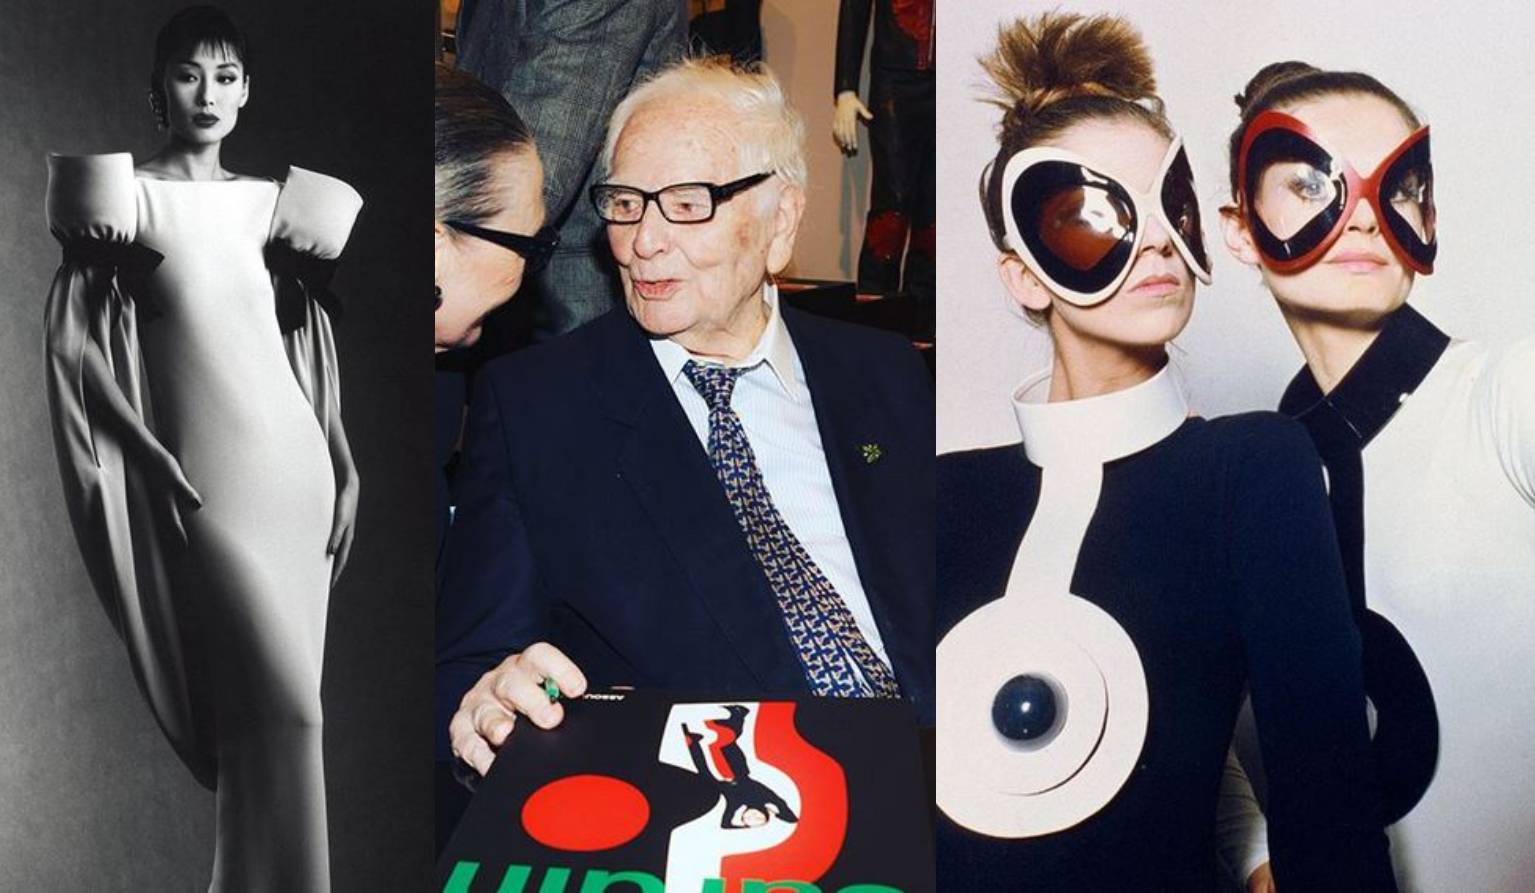 Pierre Cardin: Kralj modnoga futurizma promijenio je scenu